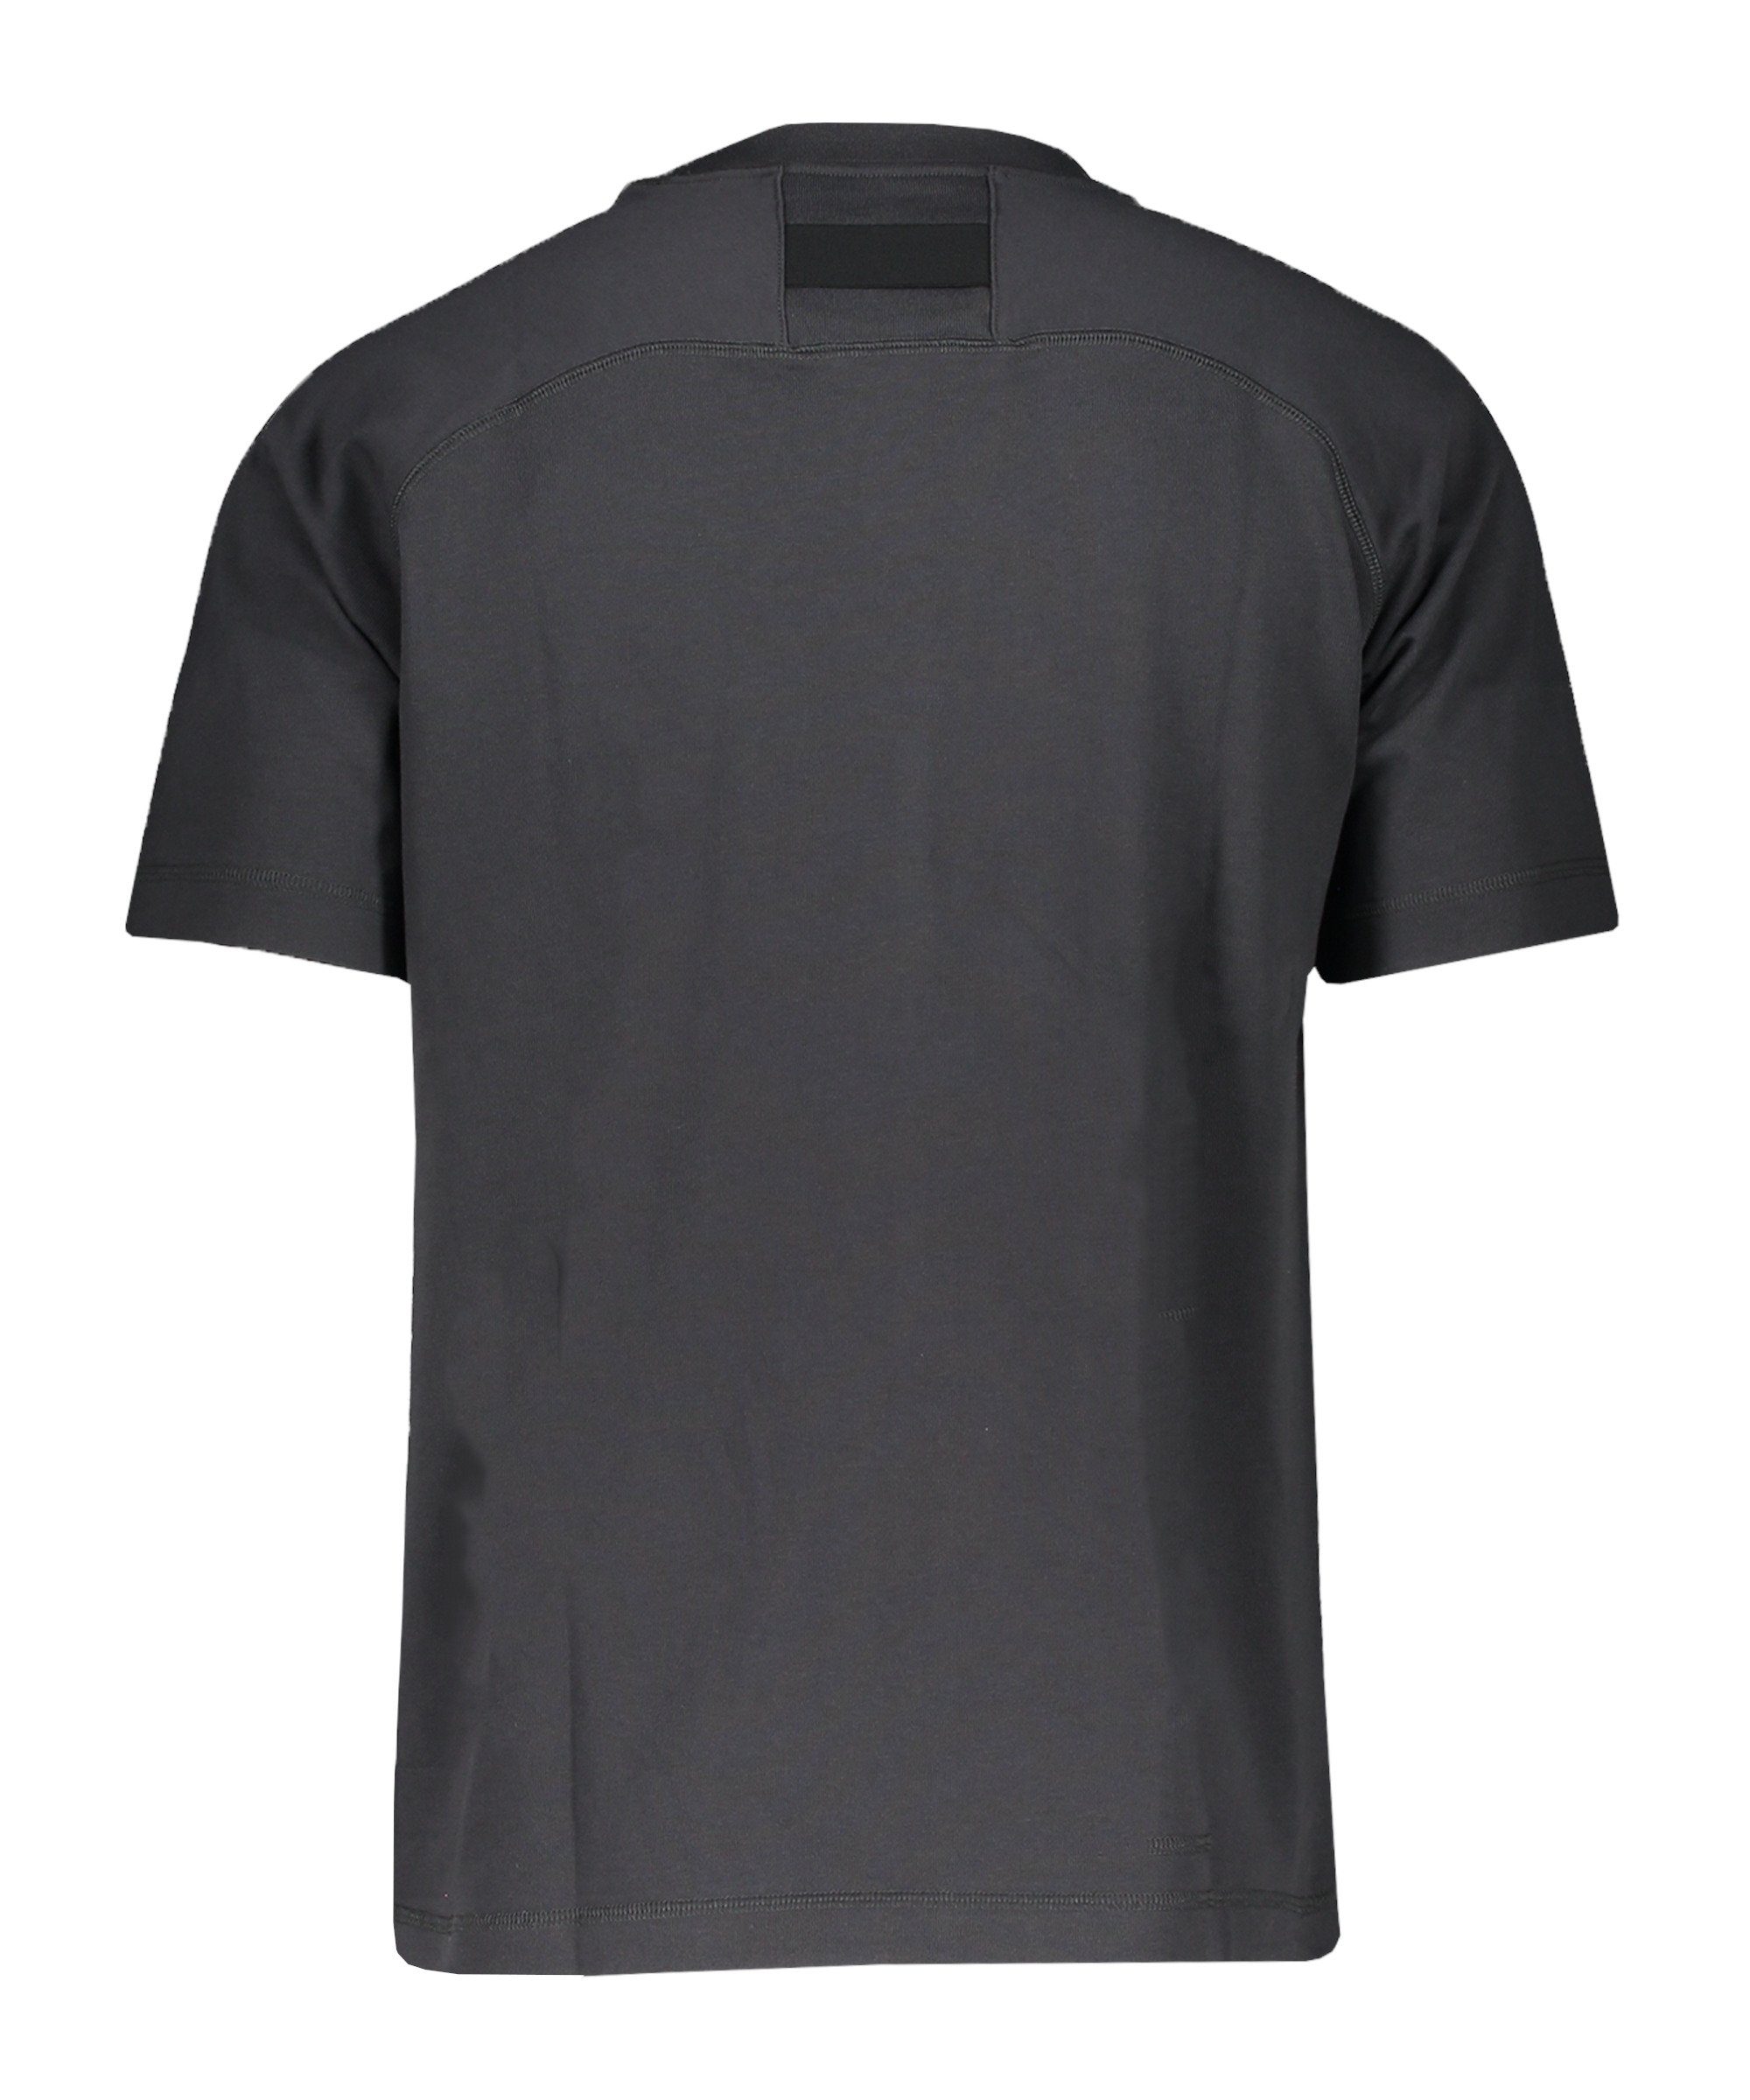 Nike grauweiss 22 T-Shirt Express T-Shirt Strike default